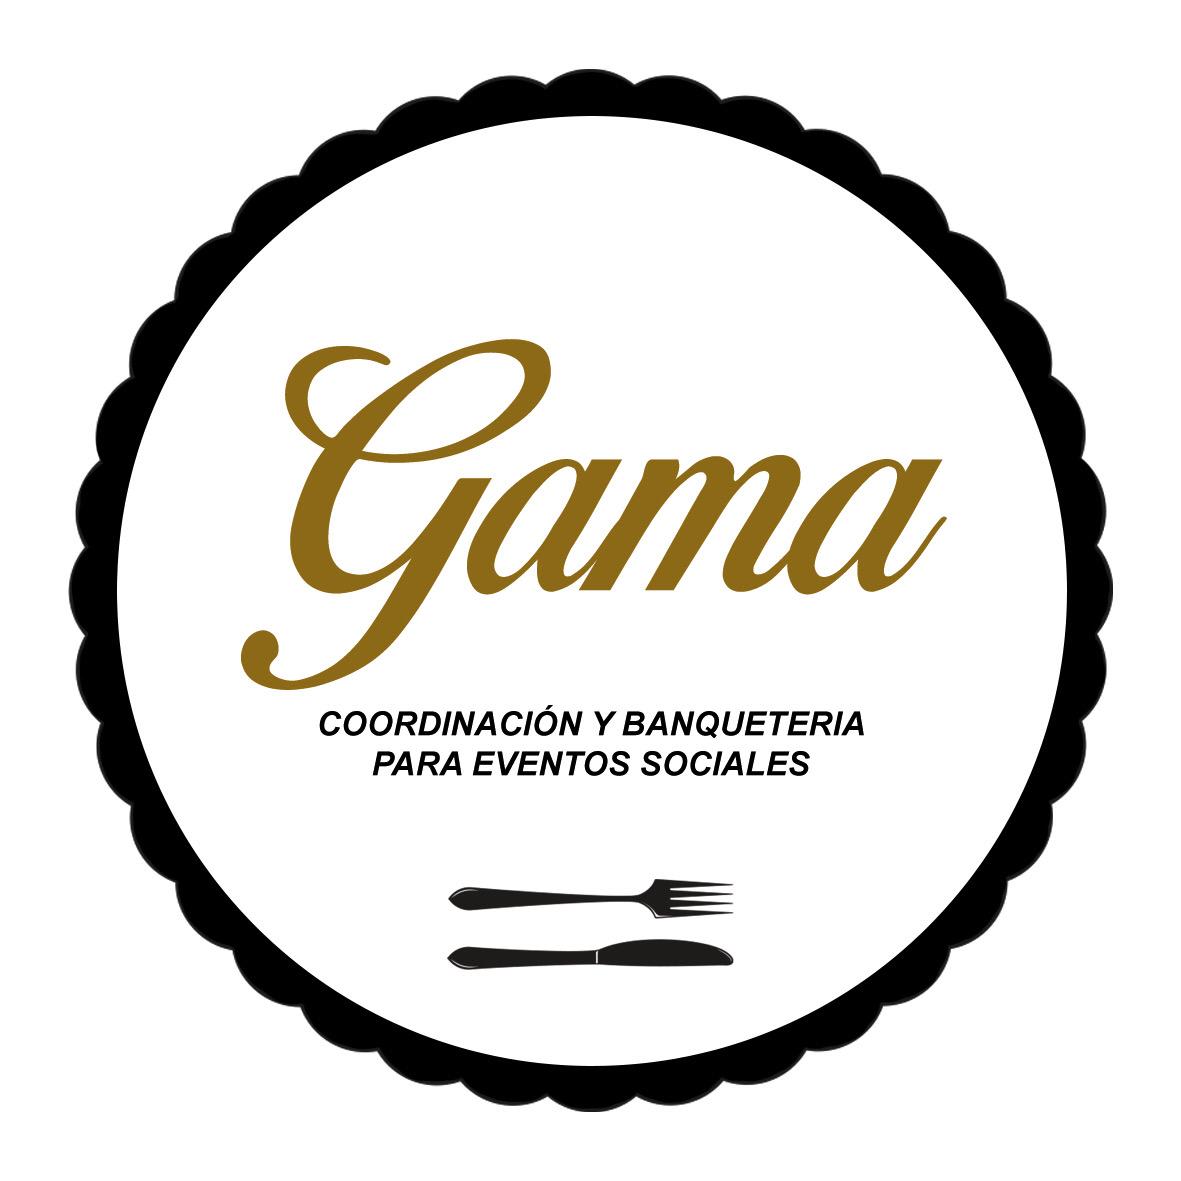 Coordinación para eventos sociales “Gama”